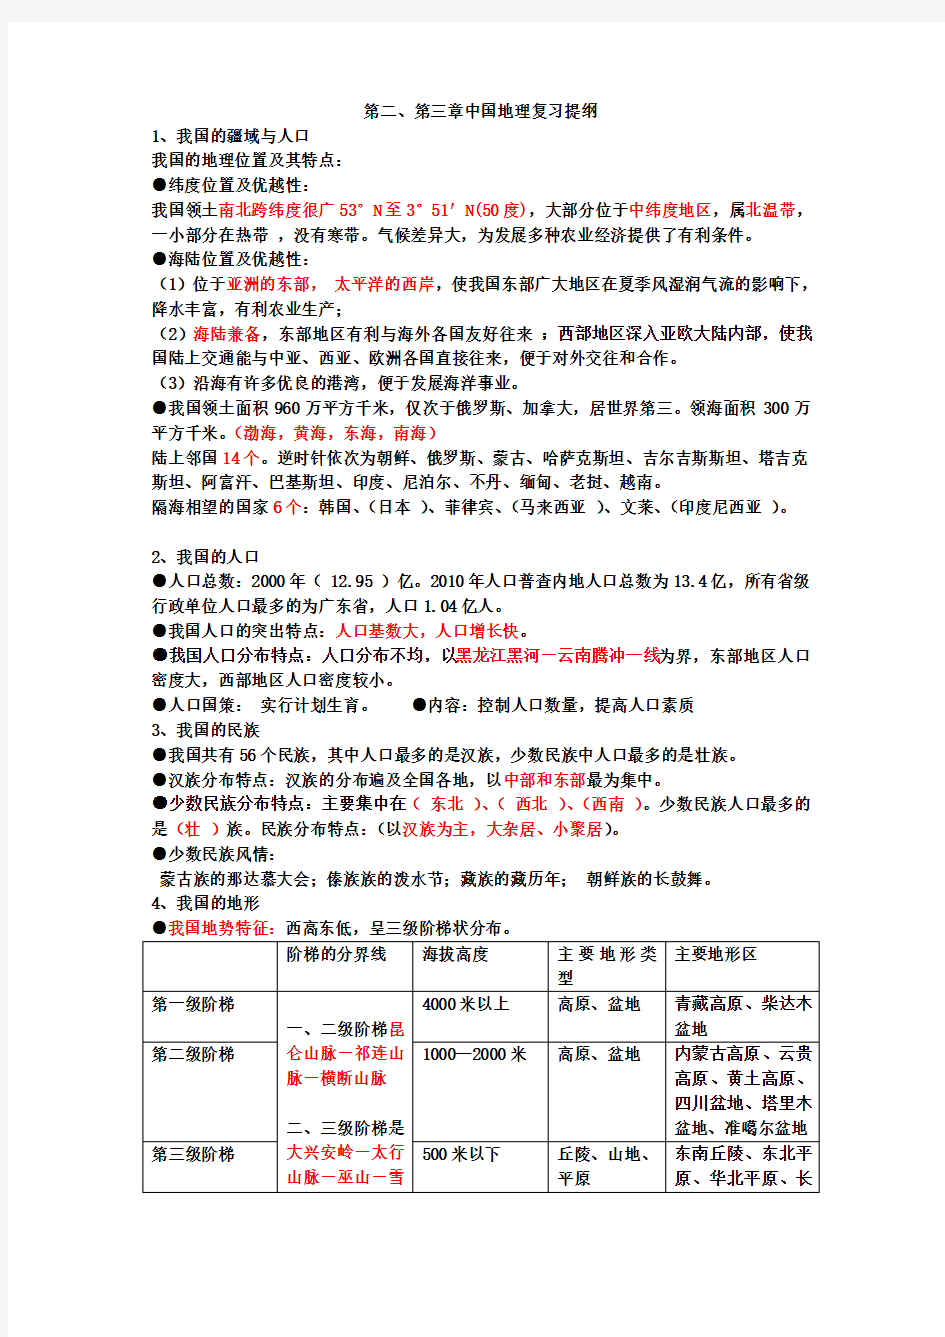 七年级上中国地理复习提纲 中国地图出版社